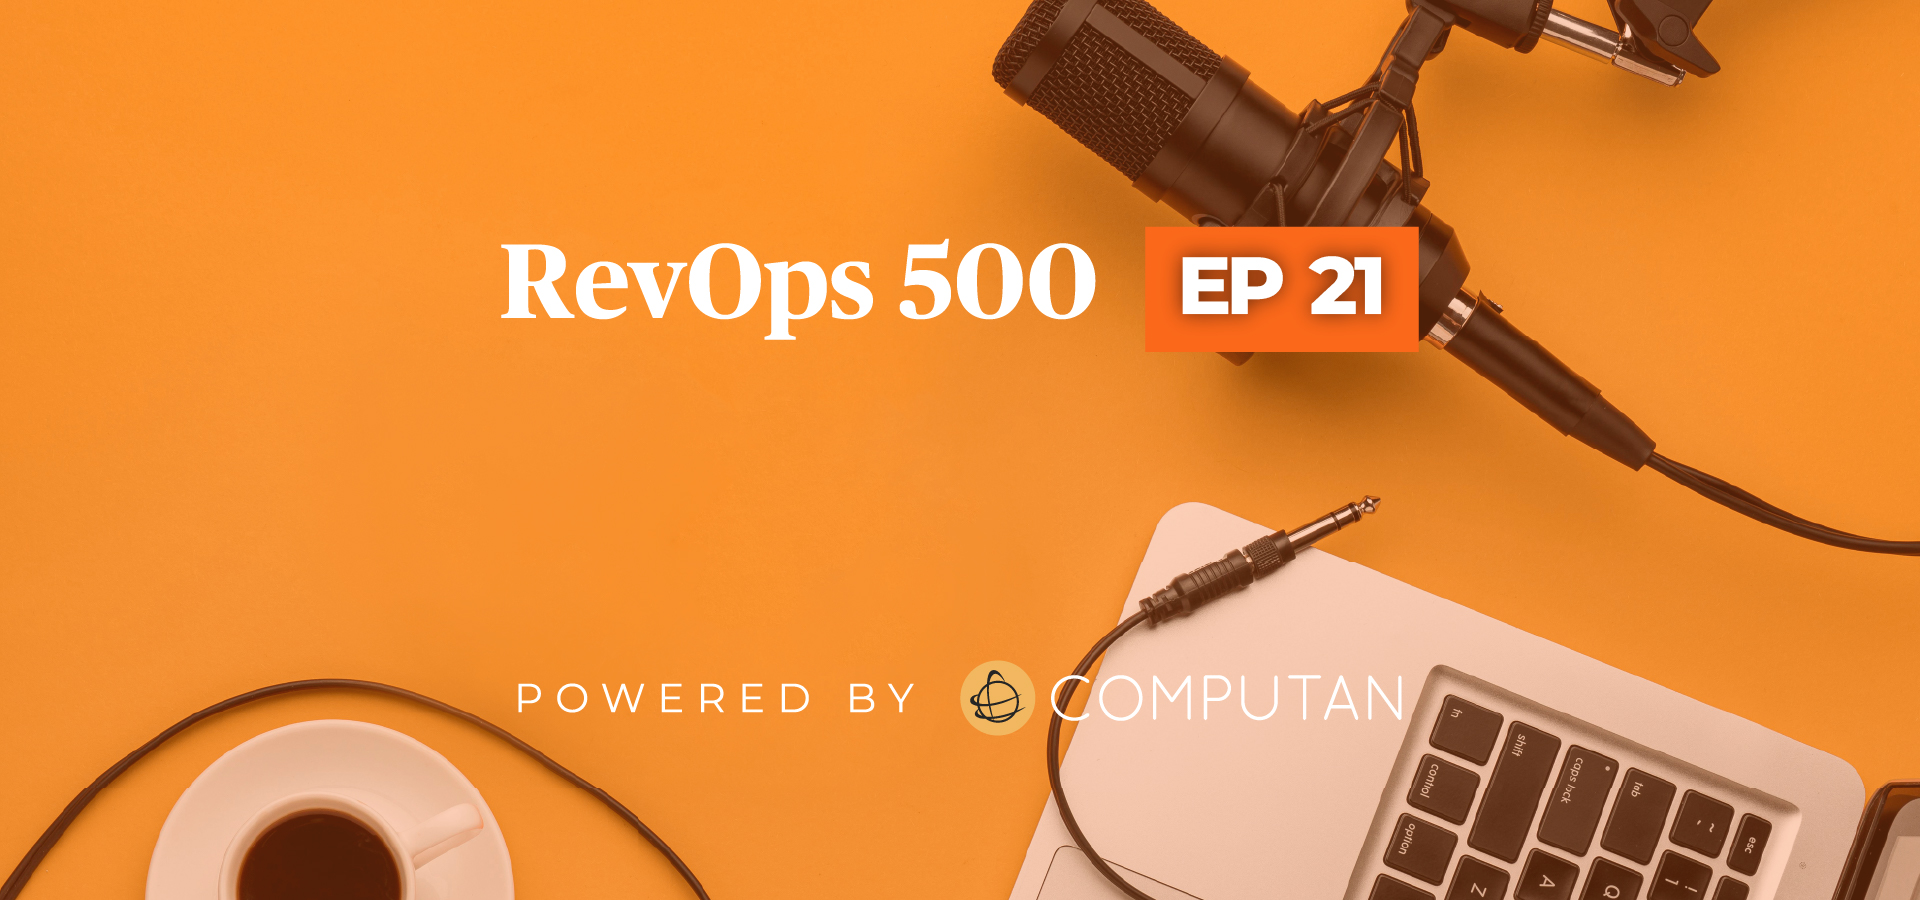 RevOps 500 Episode 21